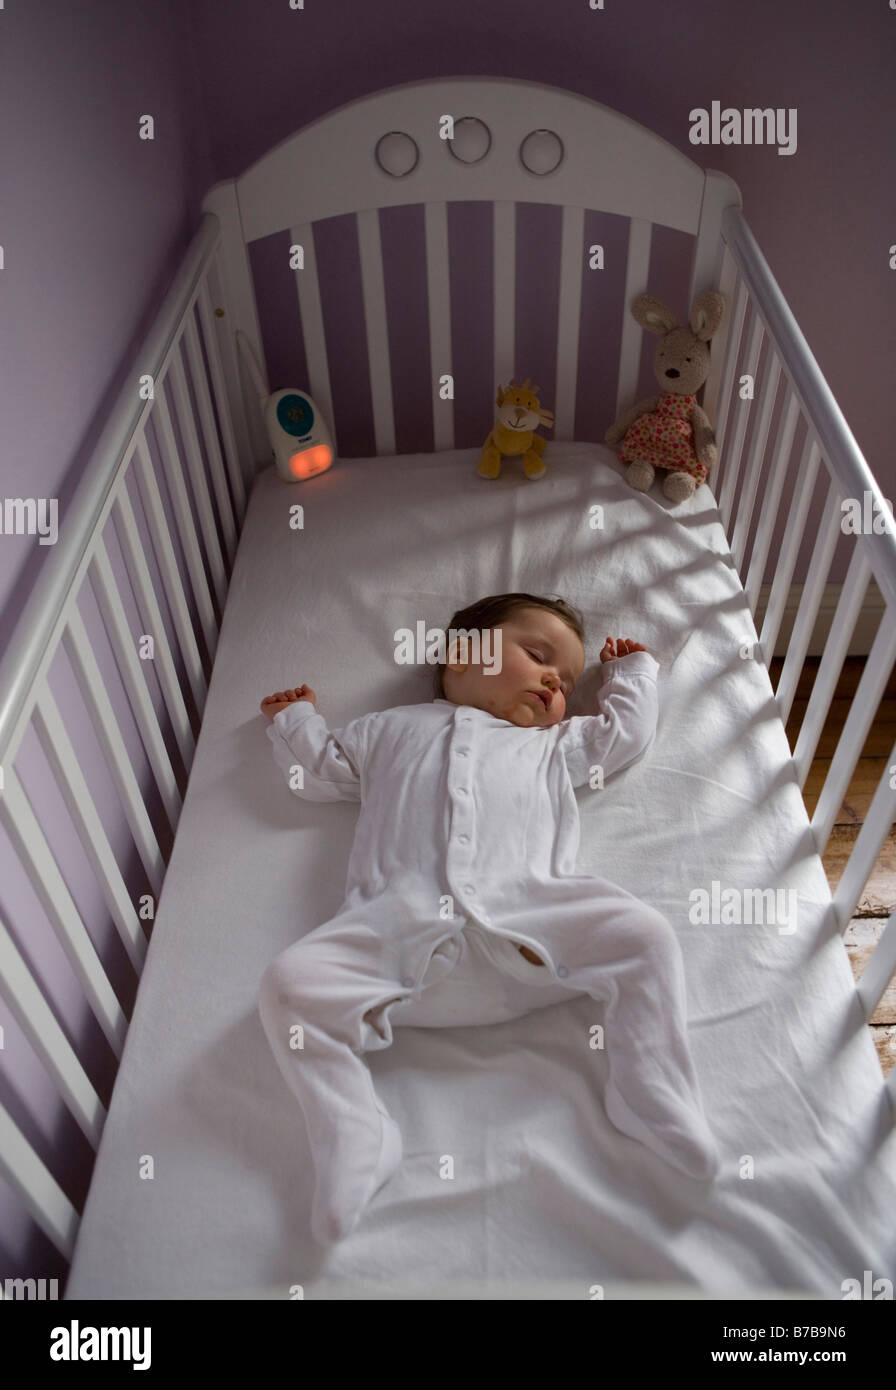 baby girl in crib